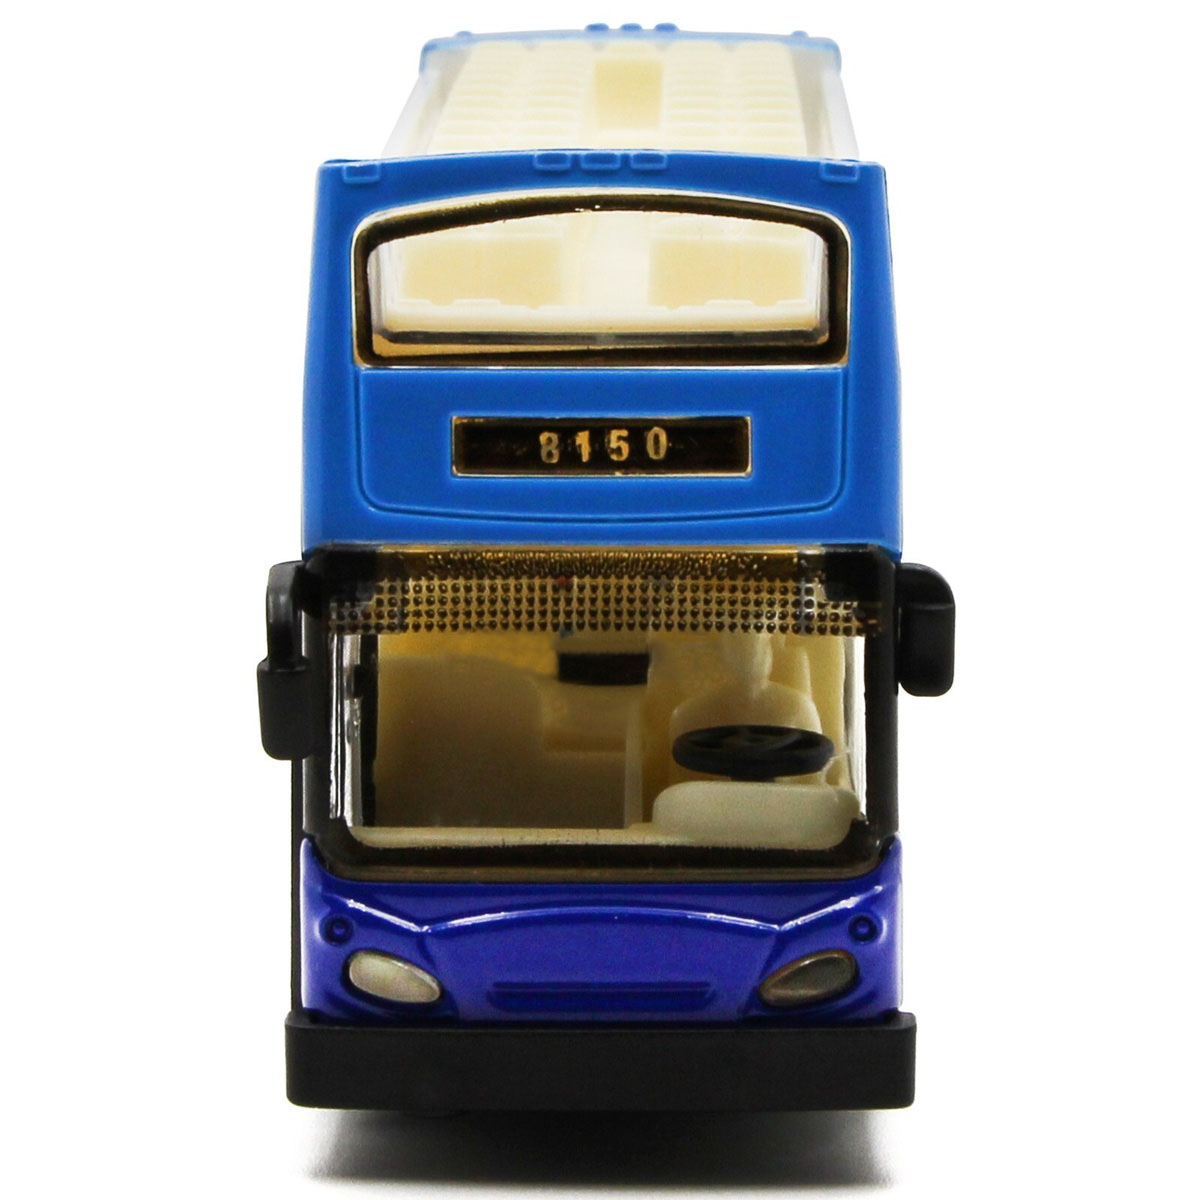 Металлическая машинка 1:66 «Автобус экскурсионный» А8150 инерционная, свет, звук / Микс